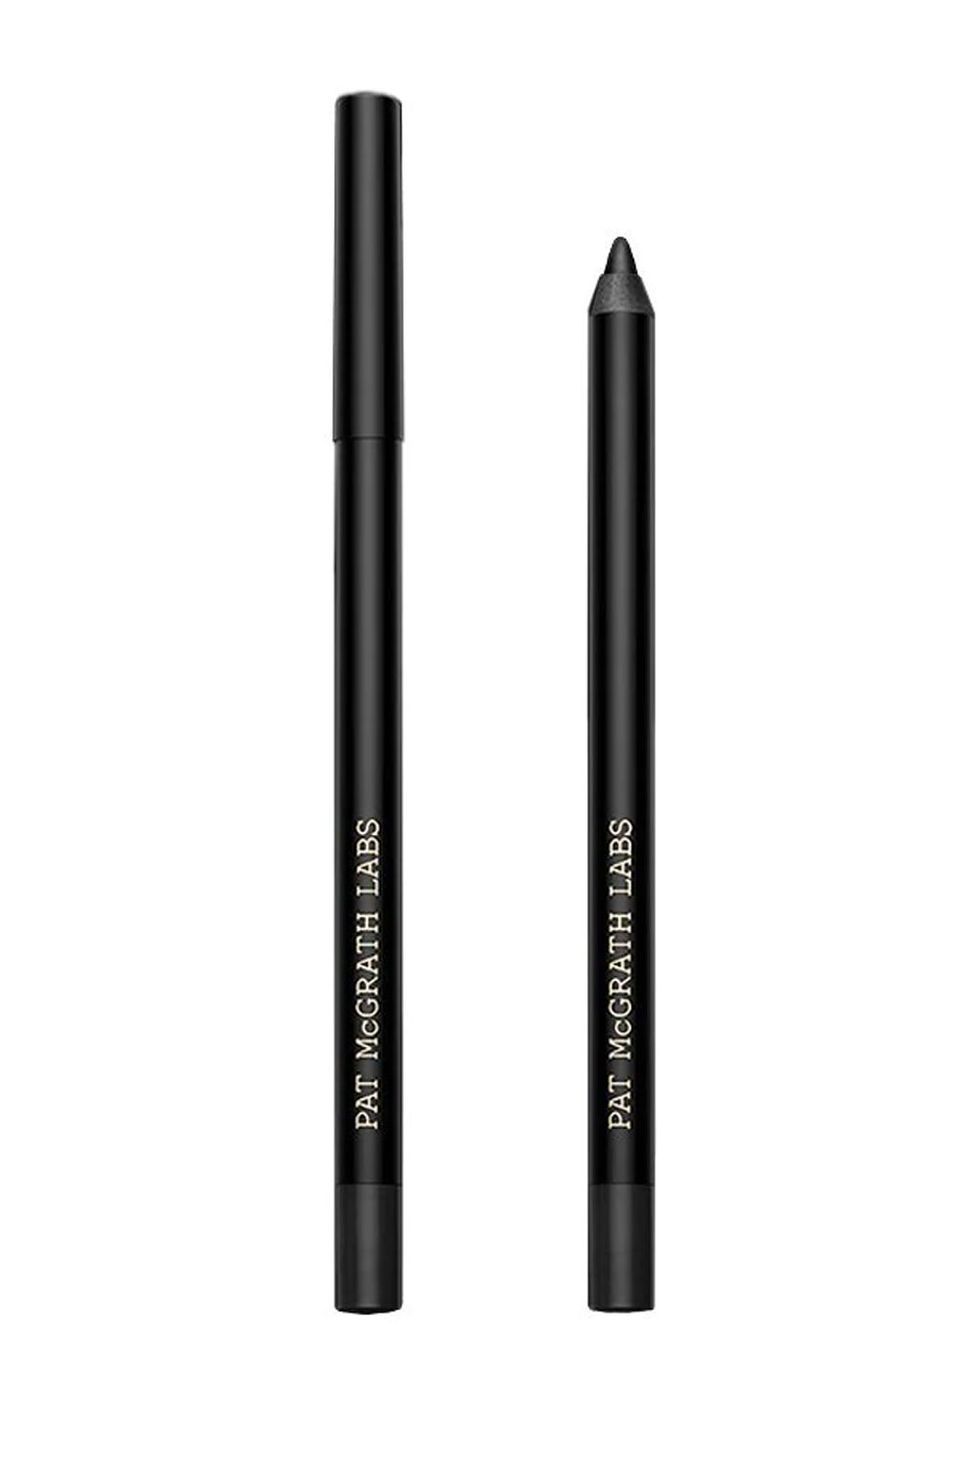 Pat McGrath Labs PermaGel Eyeliner Pencil 